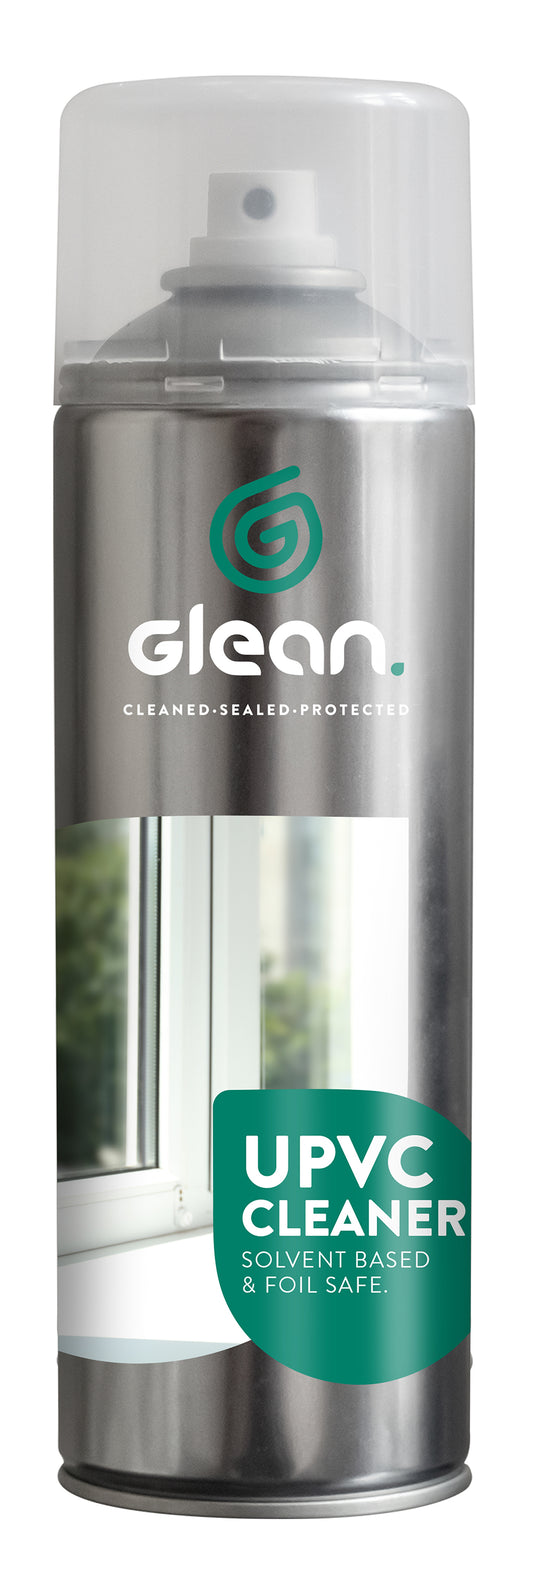 UPVC Cleaner 500ml | GLEAN